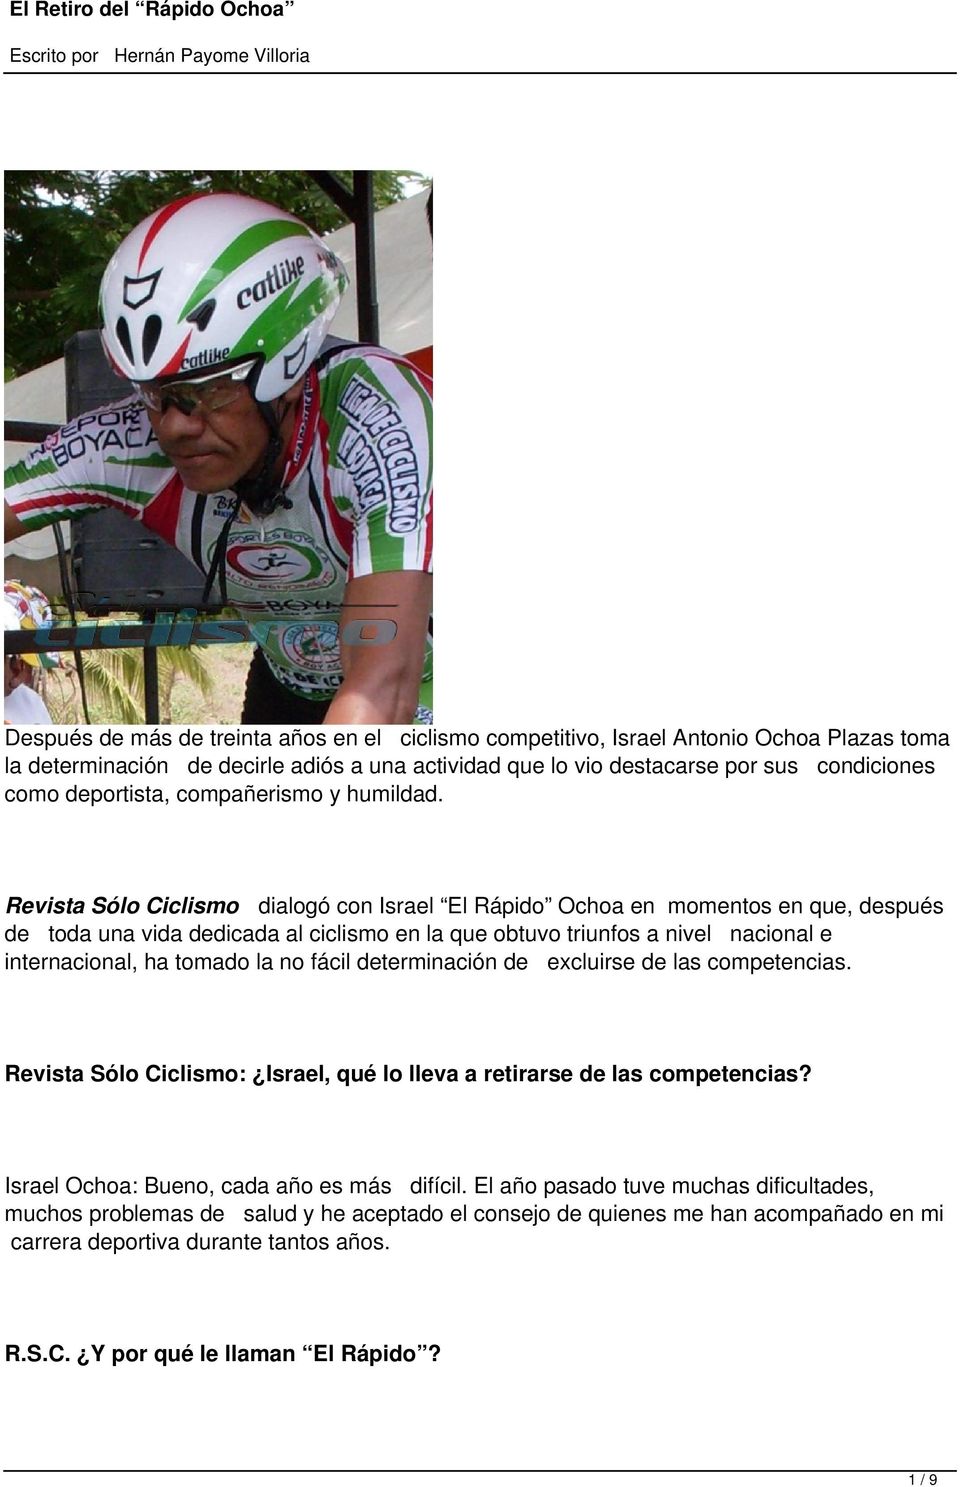 Revista Sólo Ciclismo dialogó con Israel El Rápido Ochoa en momentos en que, después de toda una vida dedicada al ciclismo en la que obtuvo triunfos a nivel nacional e internacional, ha tomado la no